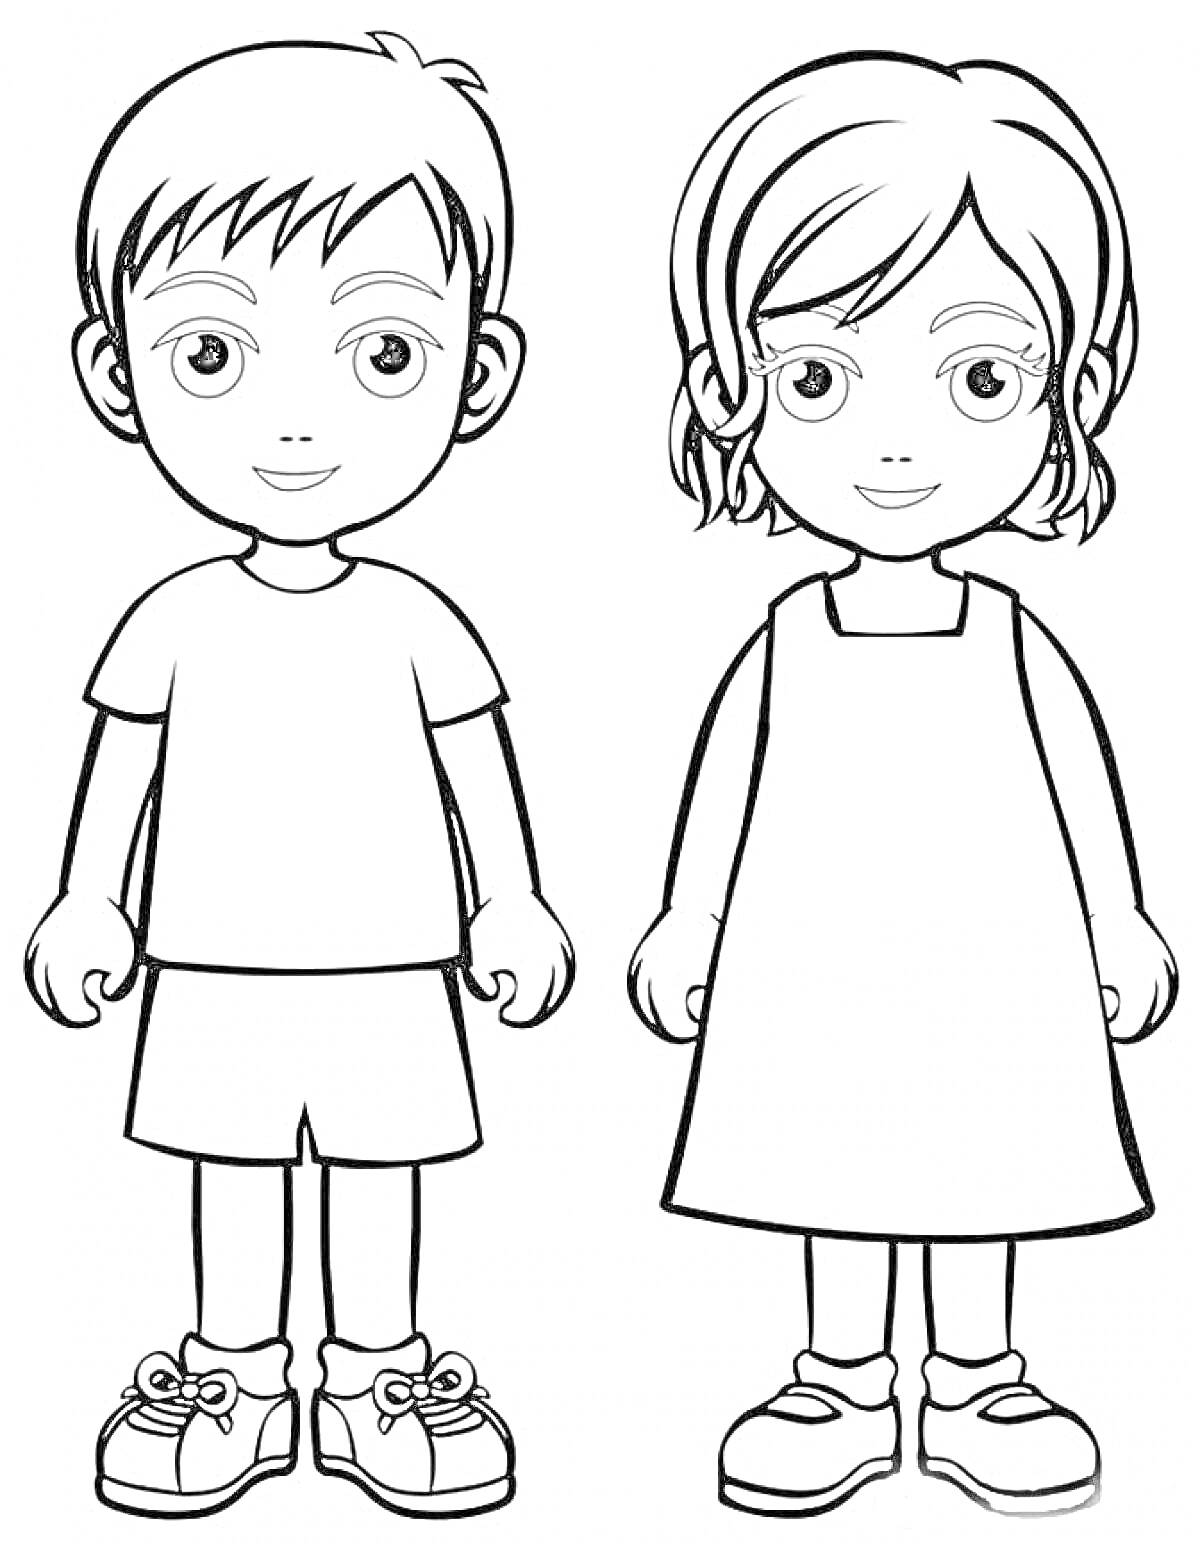 Раскраска Дети в летних нарядах (мальчик и девочка, стоящие рядом, в летних одеждах)